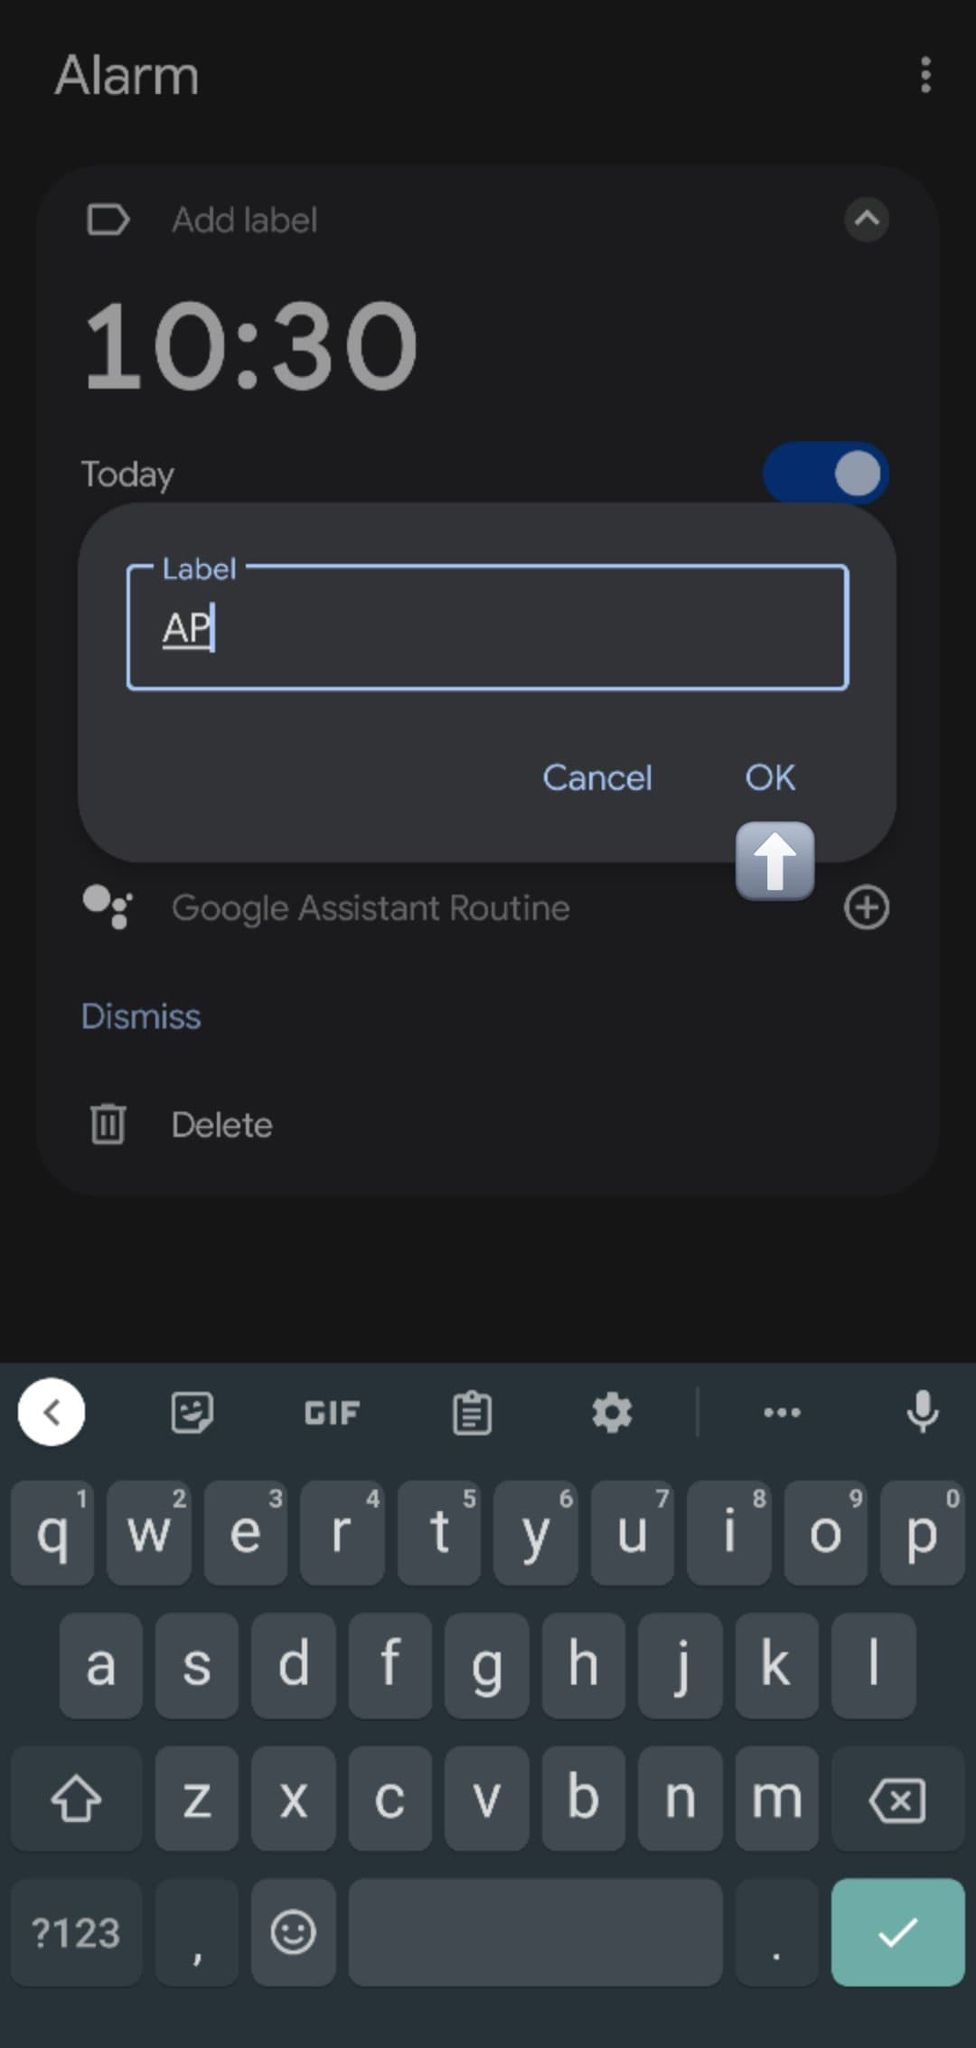 Captura de tela mostrando a adição de um rótulo para um alarme.